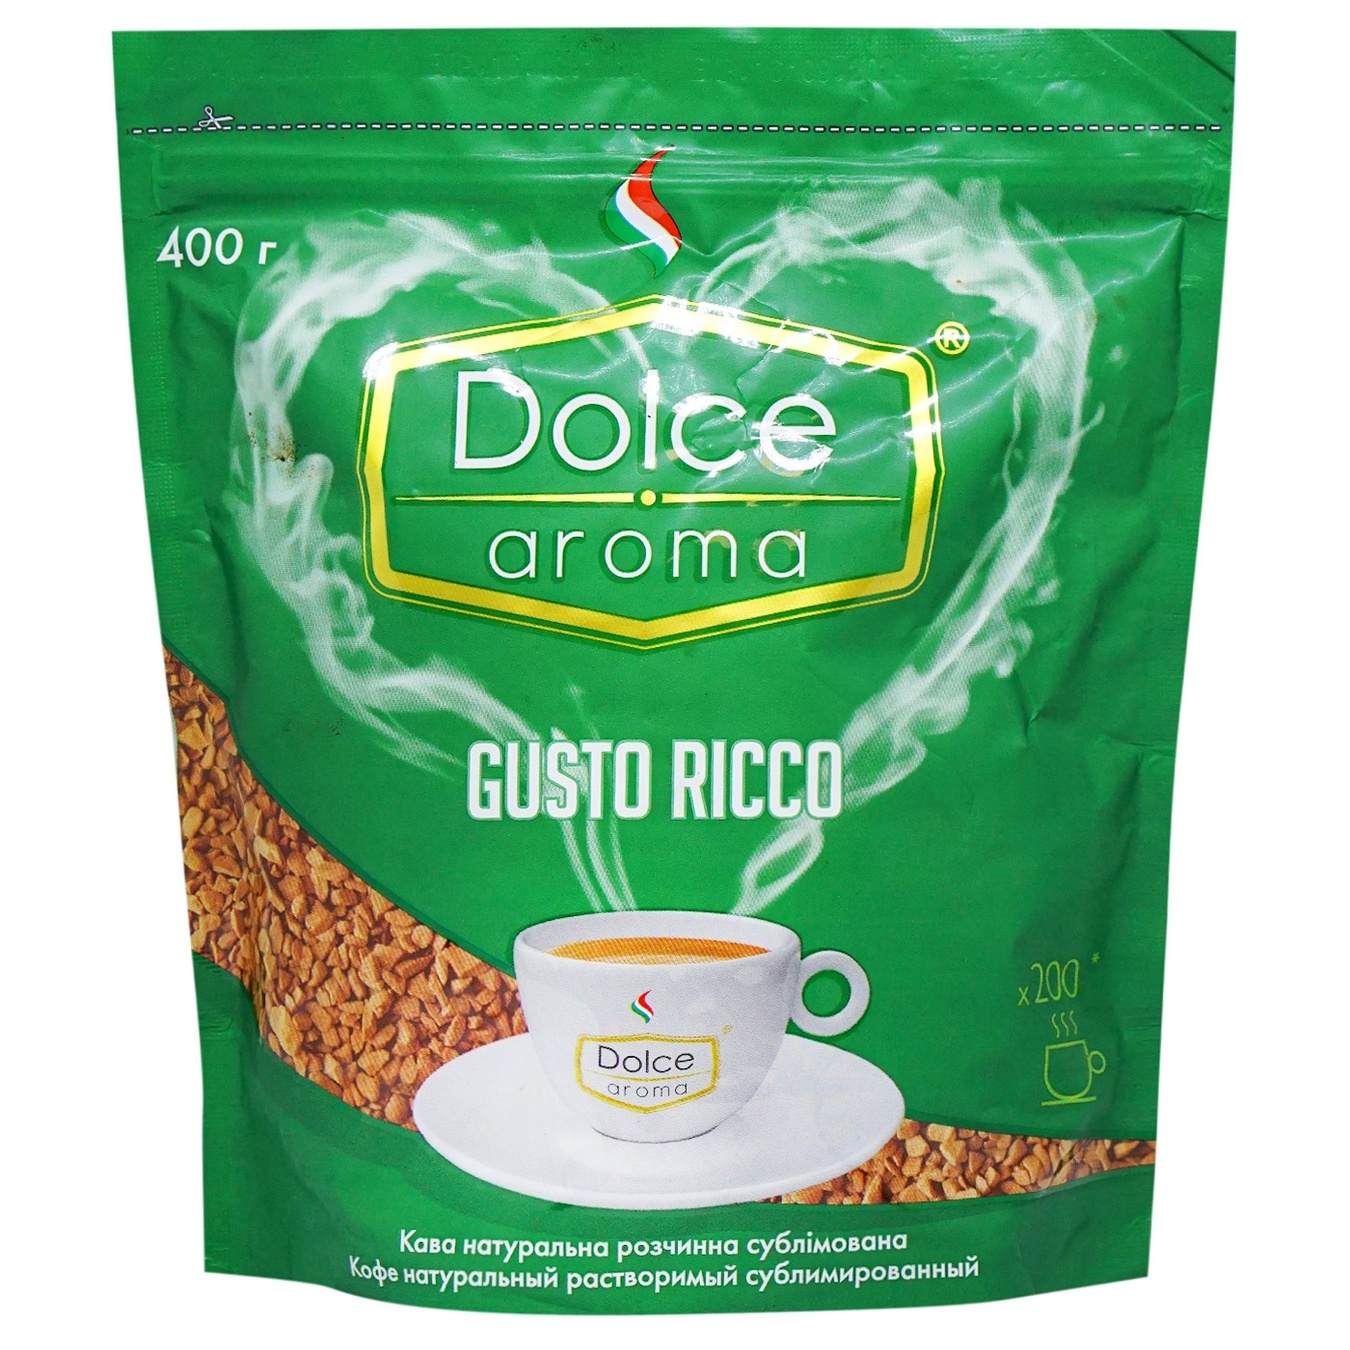 Кофе Dolce Aroma Gusto Ricco натуральный растворимый сублимированный 400г